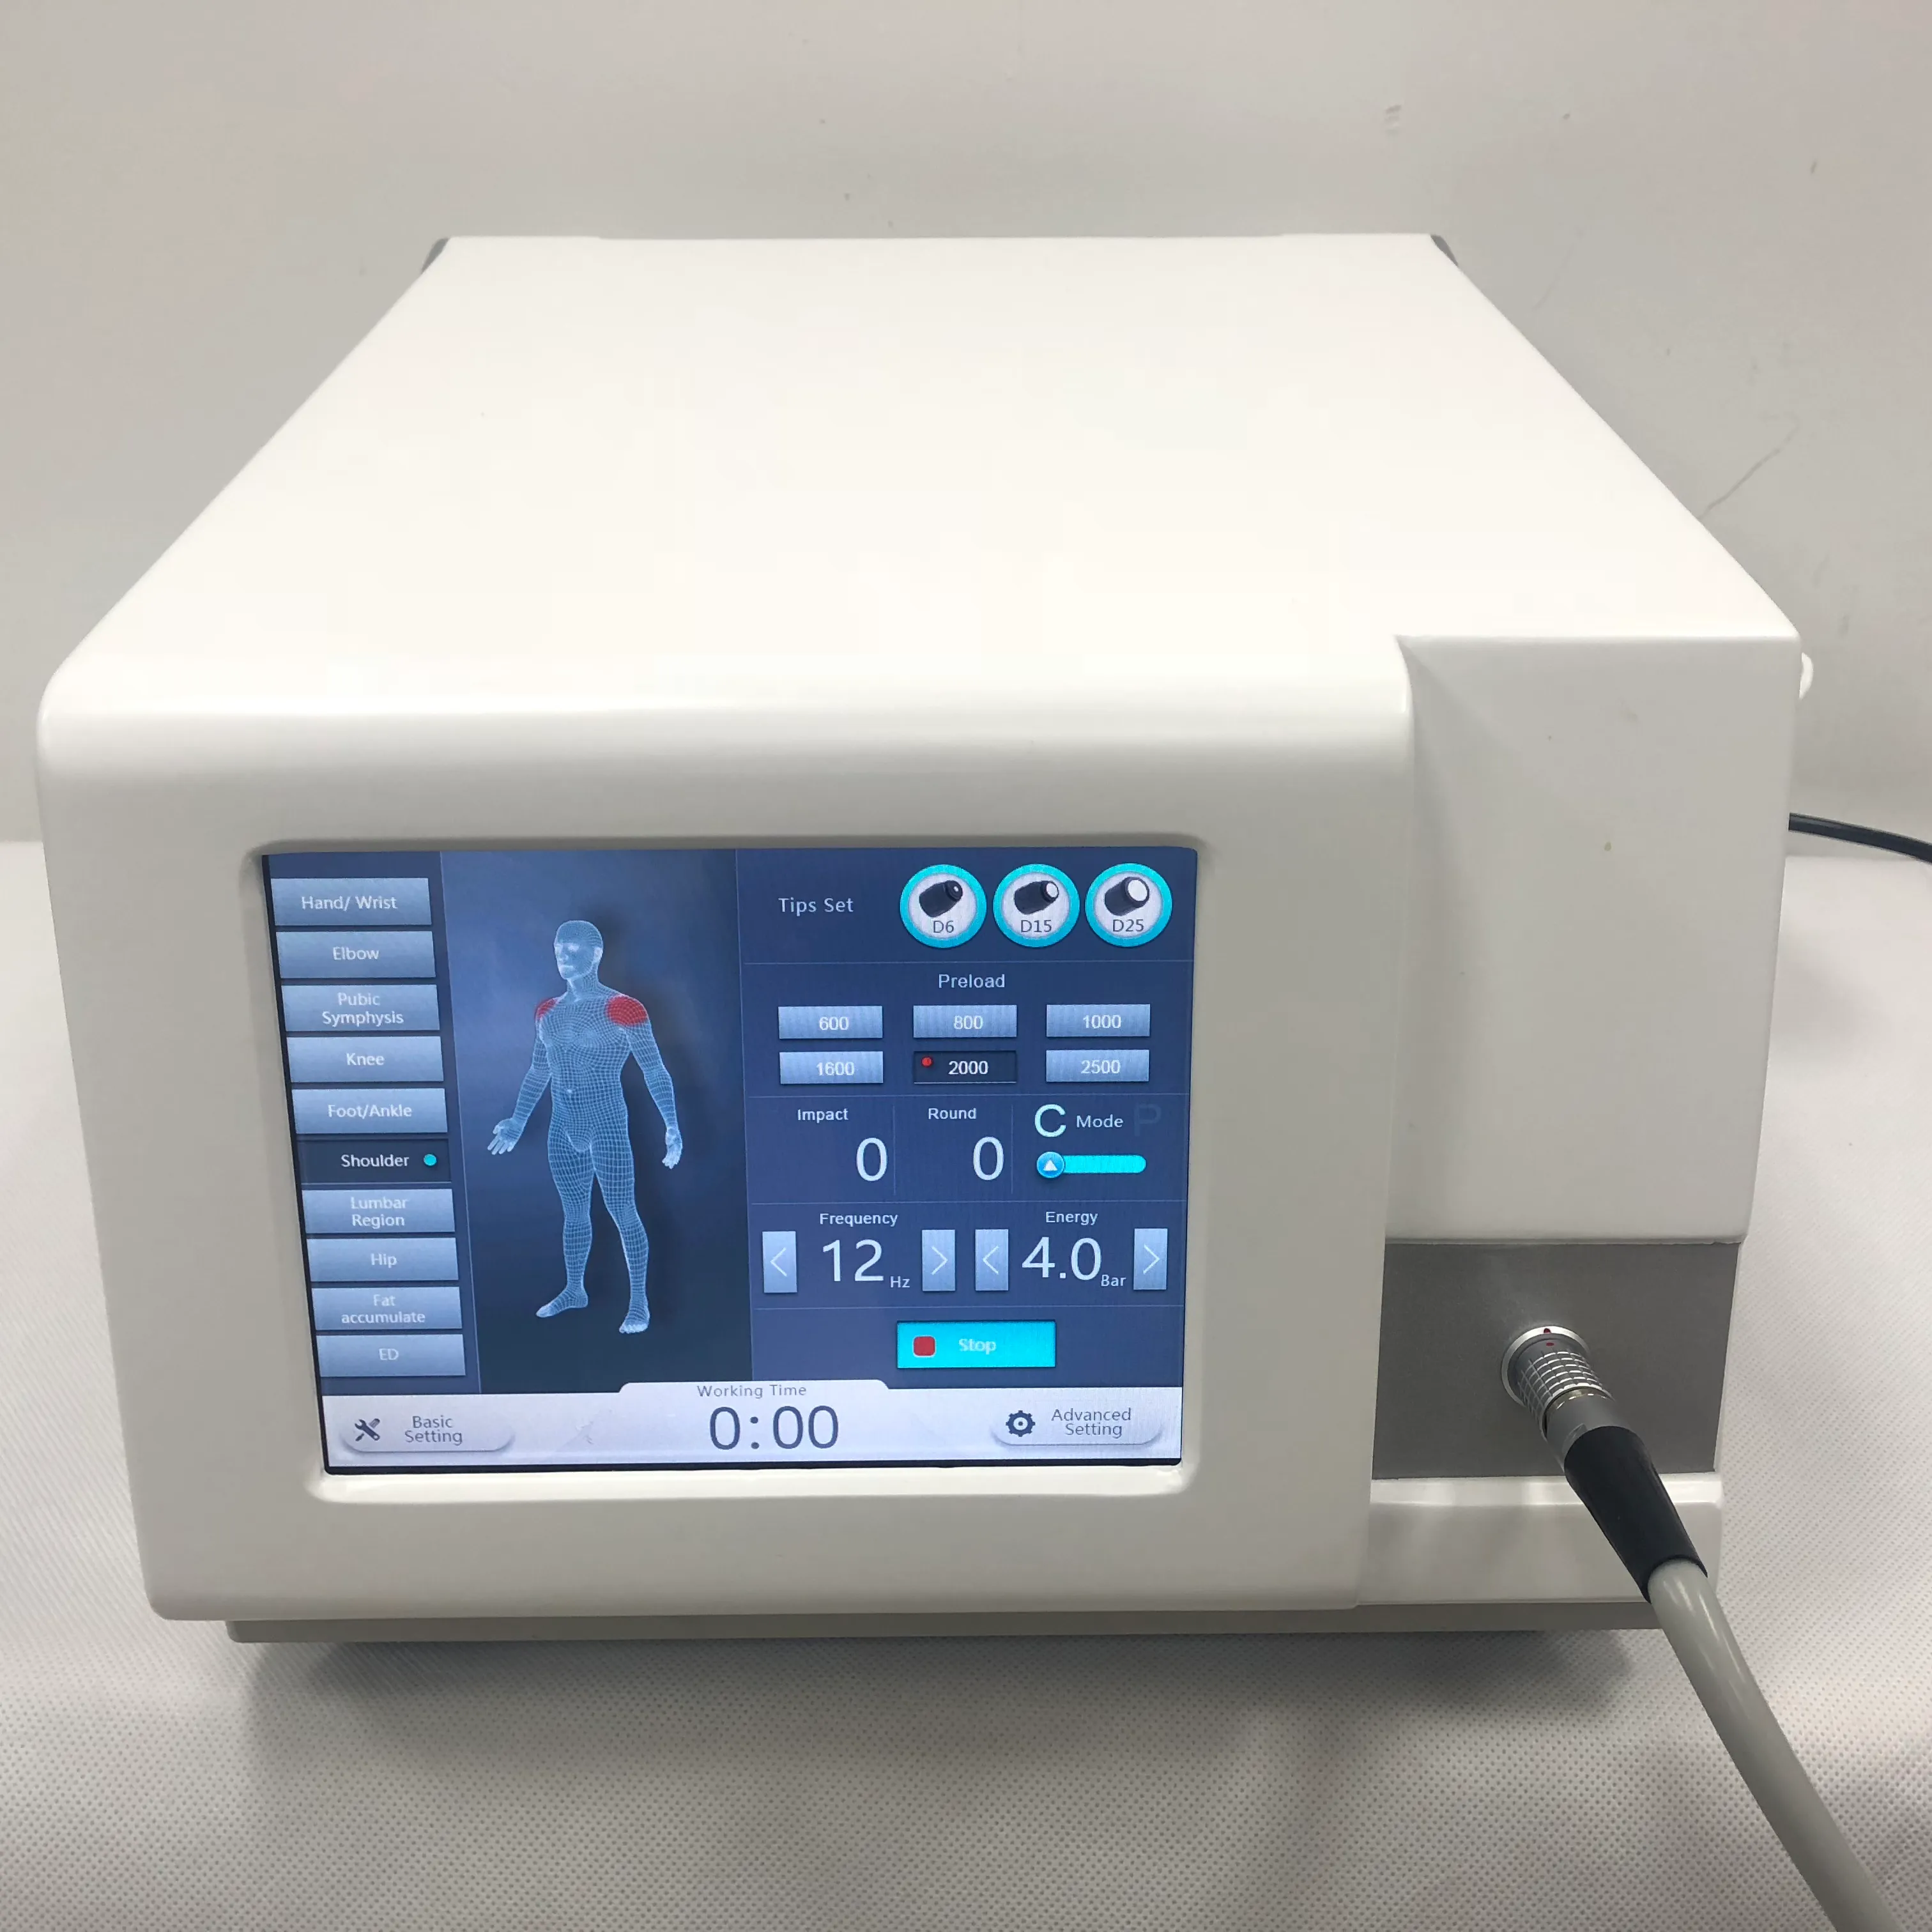 Draagbare Pneumatische Ballistische Shockwave Therapy Machine voor Body Pain Relief / Acoustic Radial Shock Wave-apparatuur aan ED-behandeling